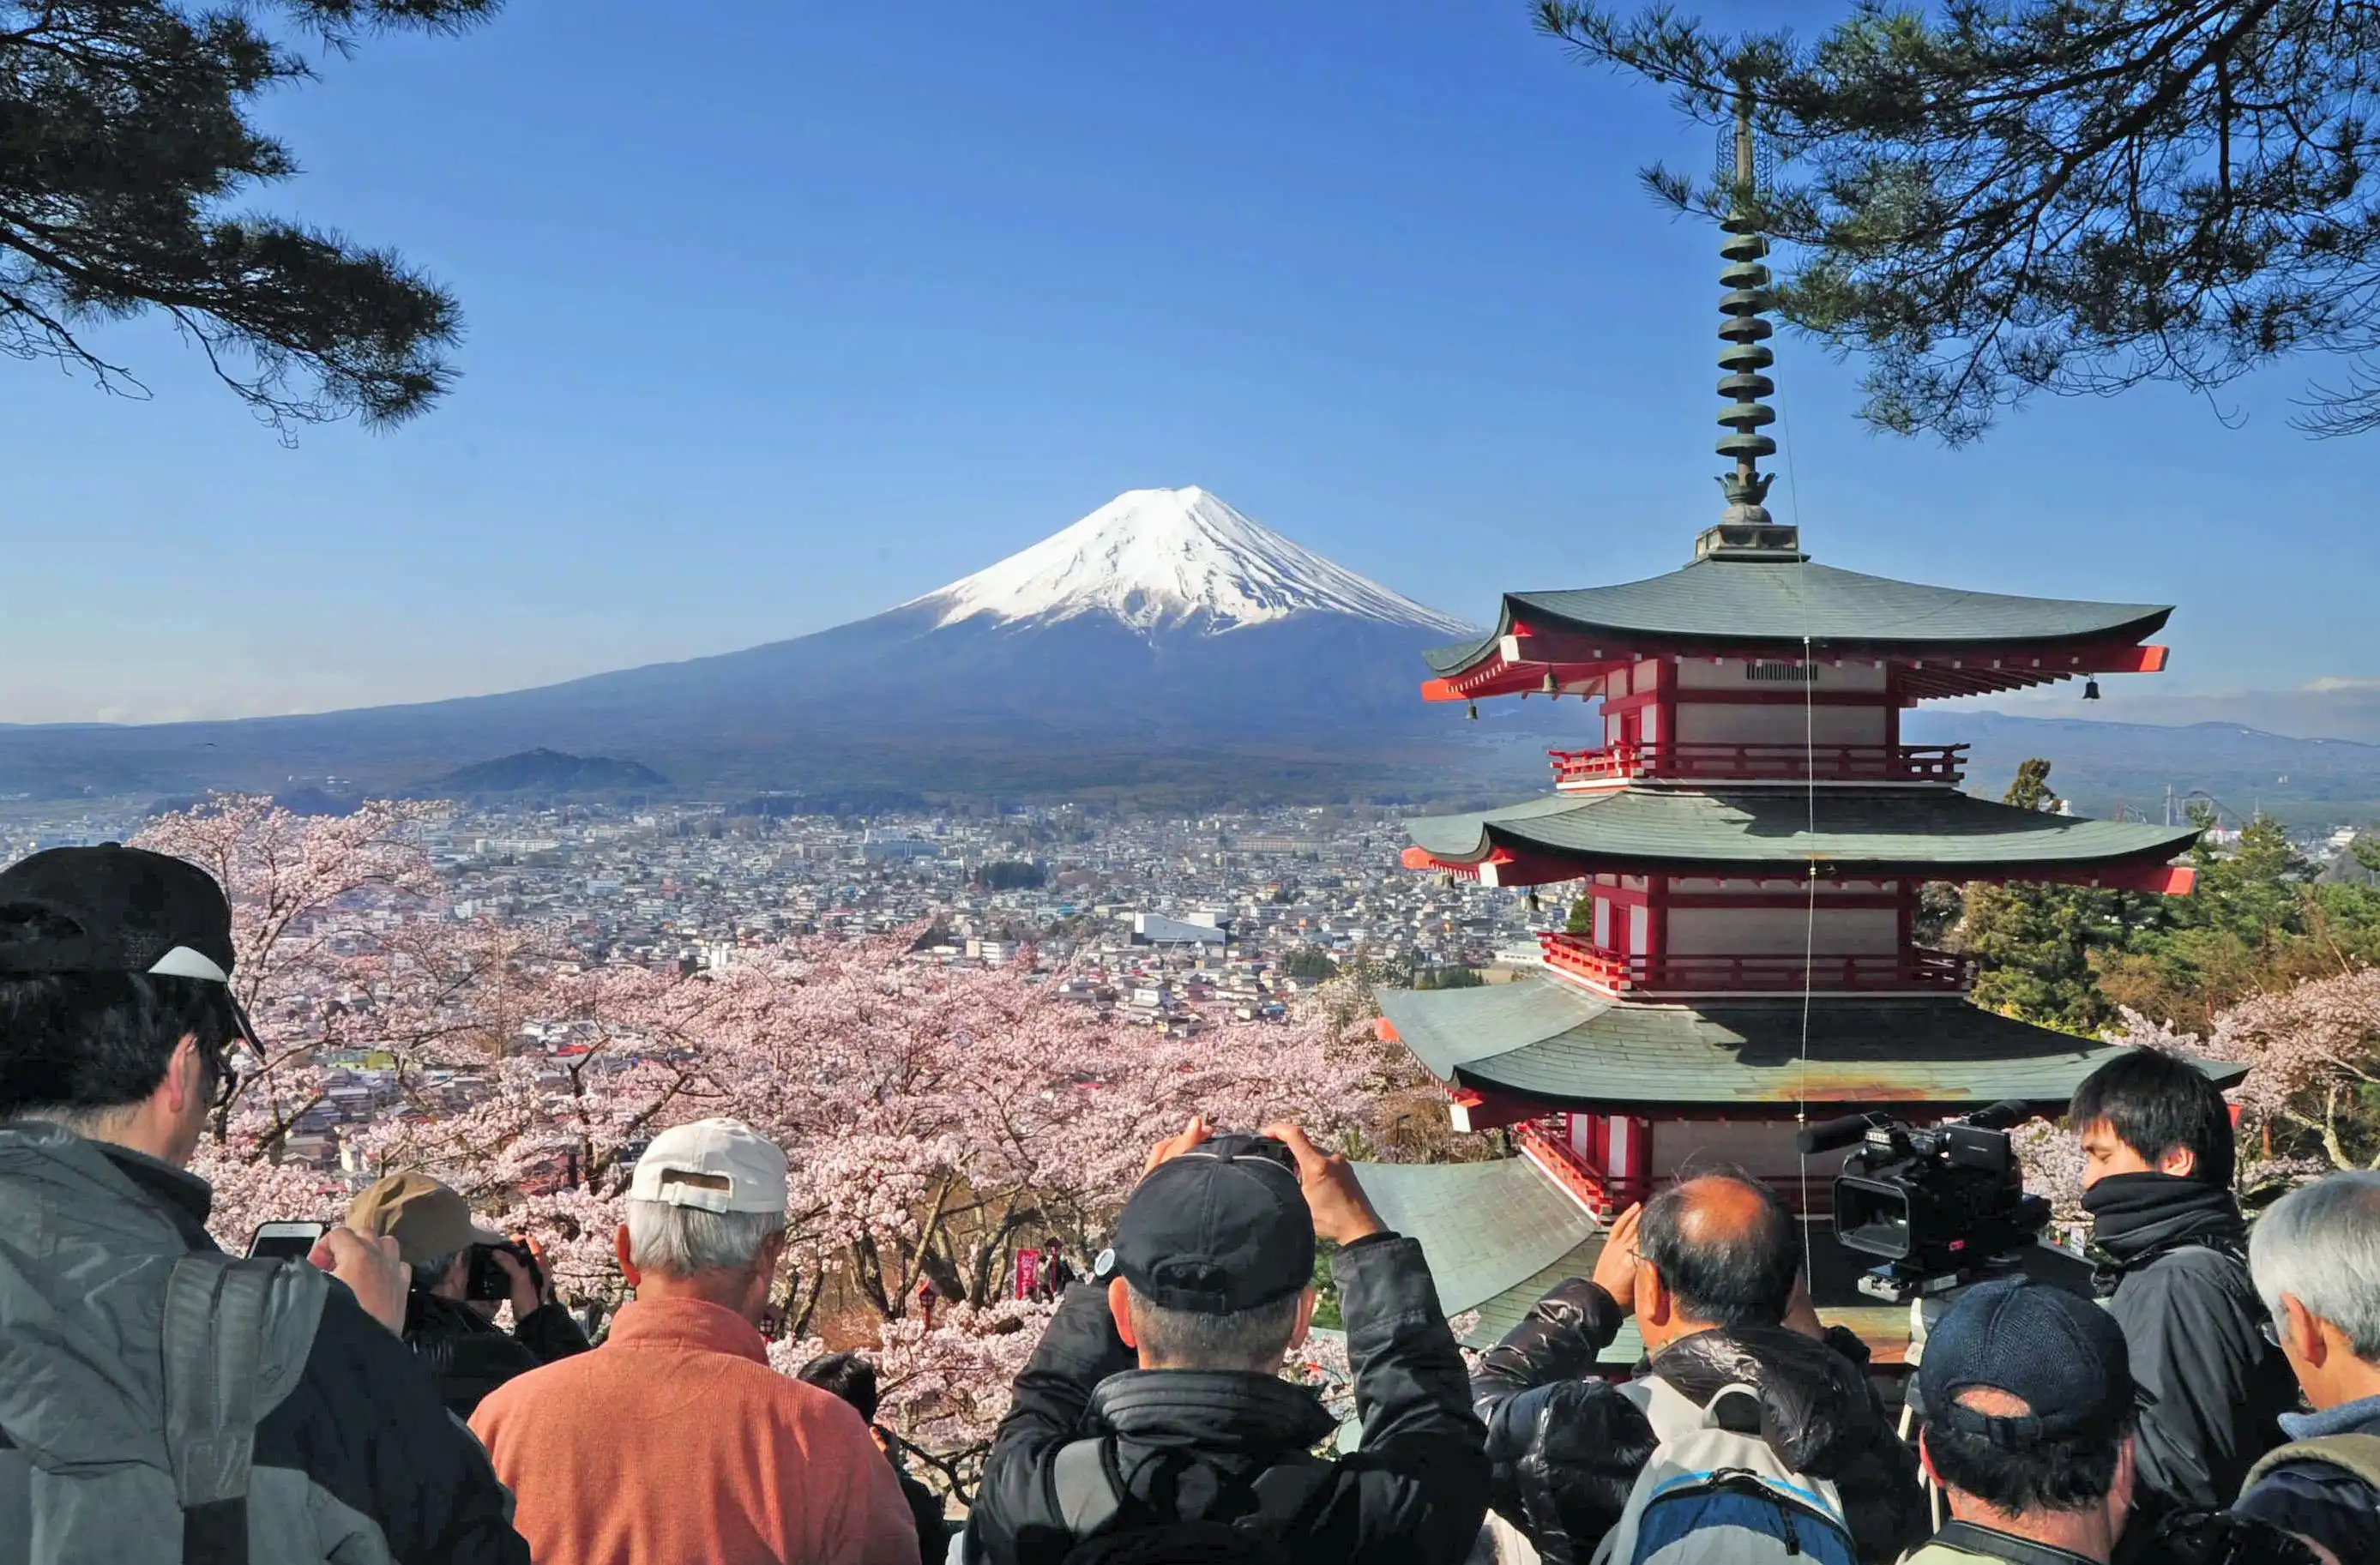 Japan tourism